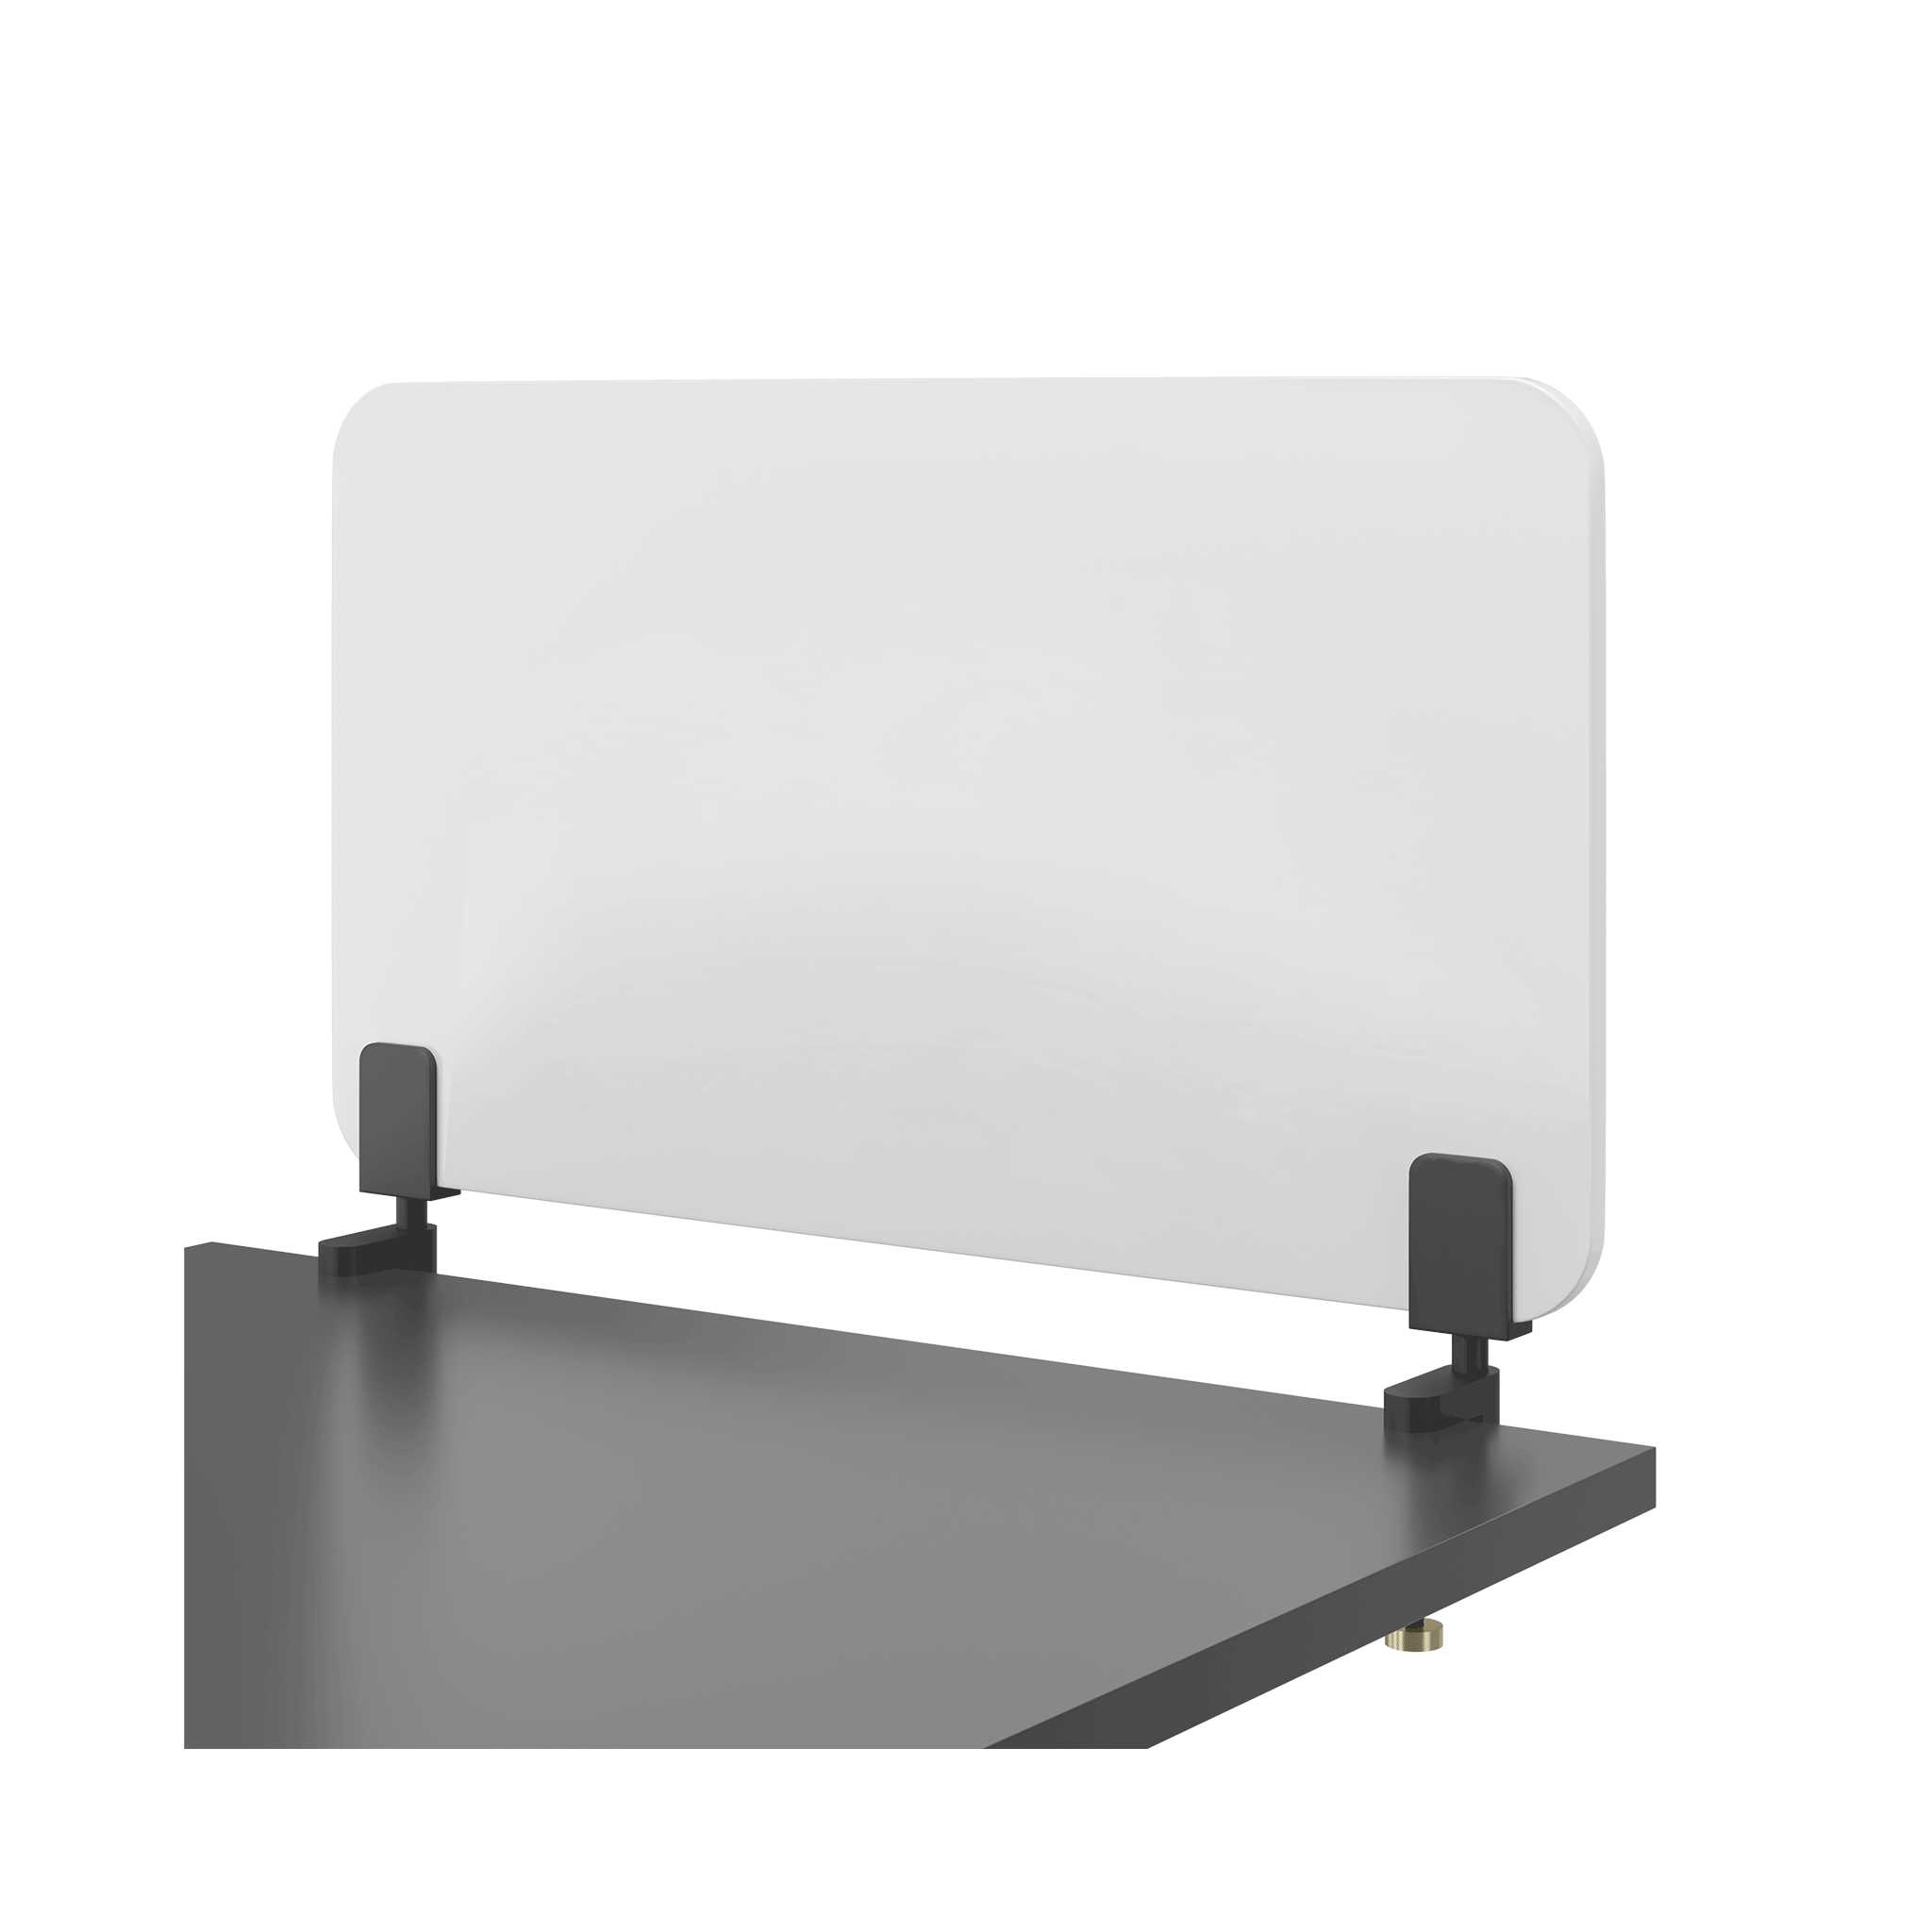 Vor weißem Hintergrund sieht man eine Nahaufnahme einer schwarzen Tischplatte, auf der ein weißes Whiteboard mit einer Mattschwarzen Klemme befestigt ist.